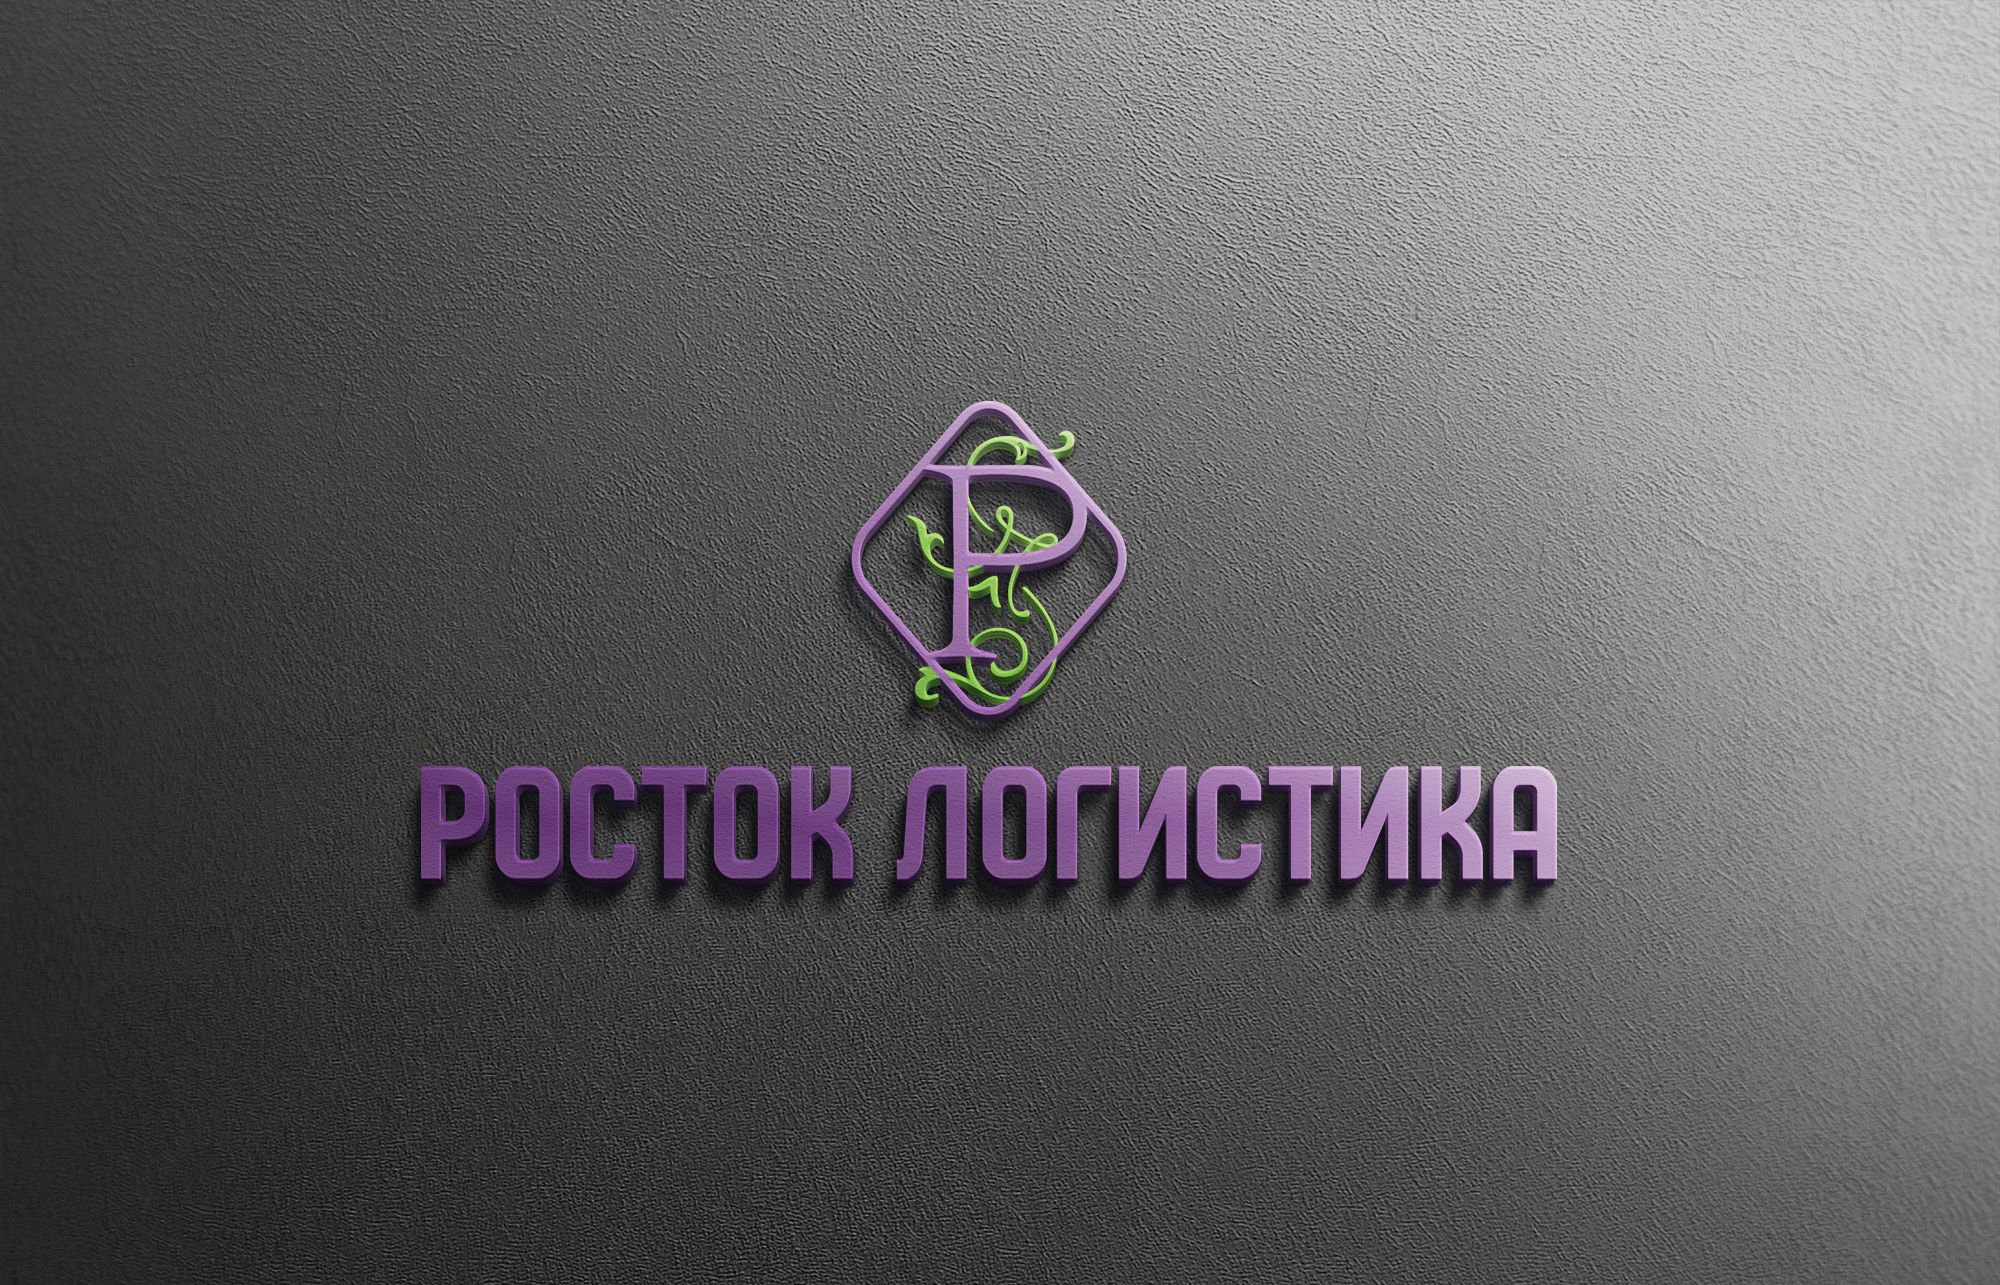 Логотип логистического оператора (комплекса) - дизайнер Gas-Min